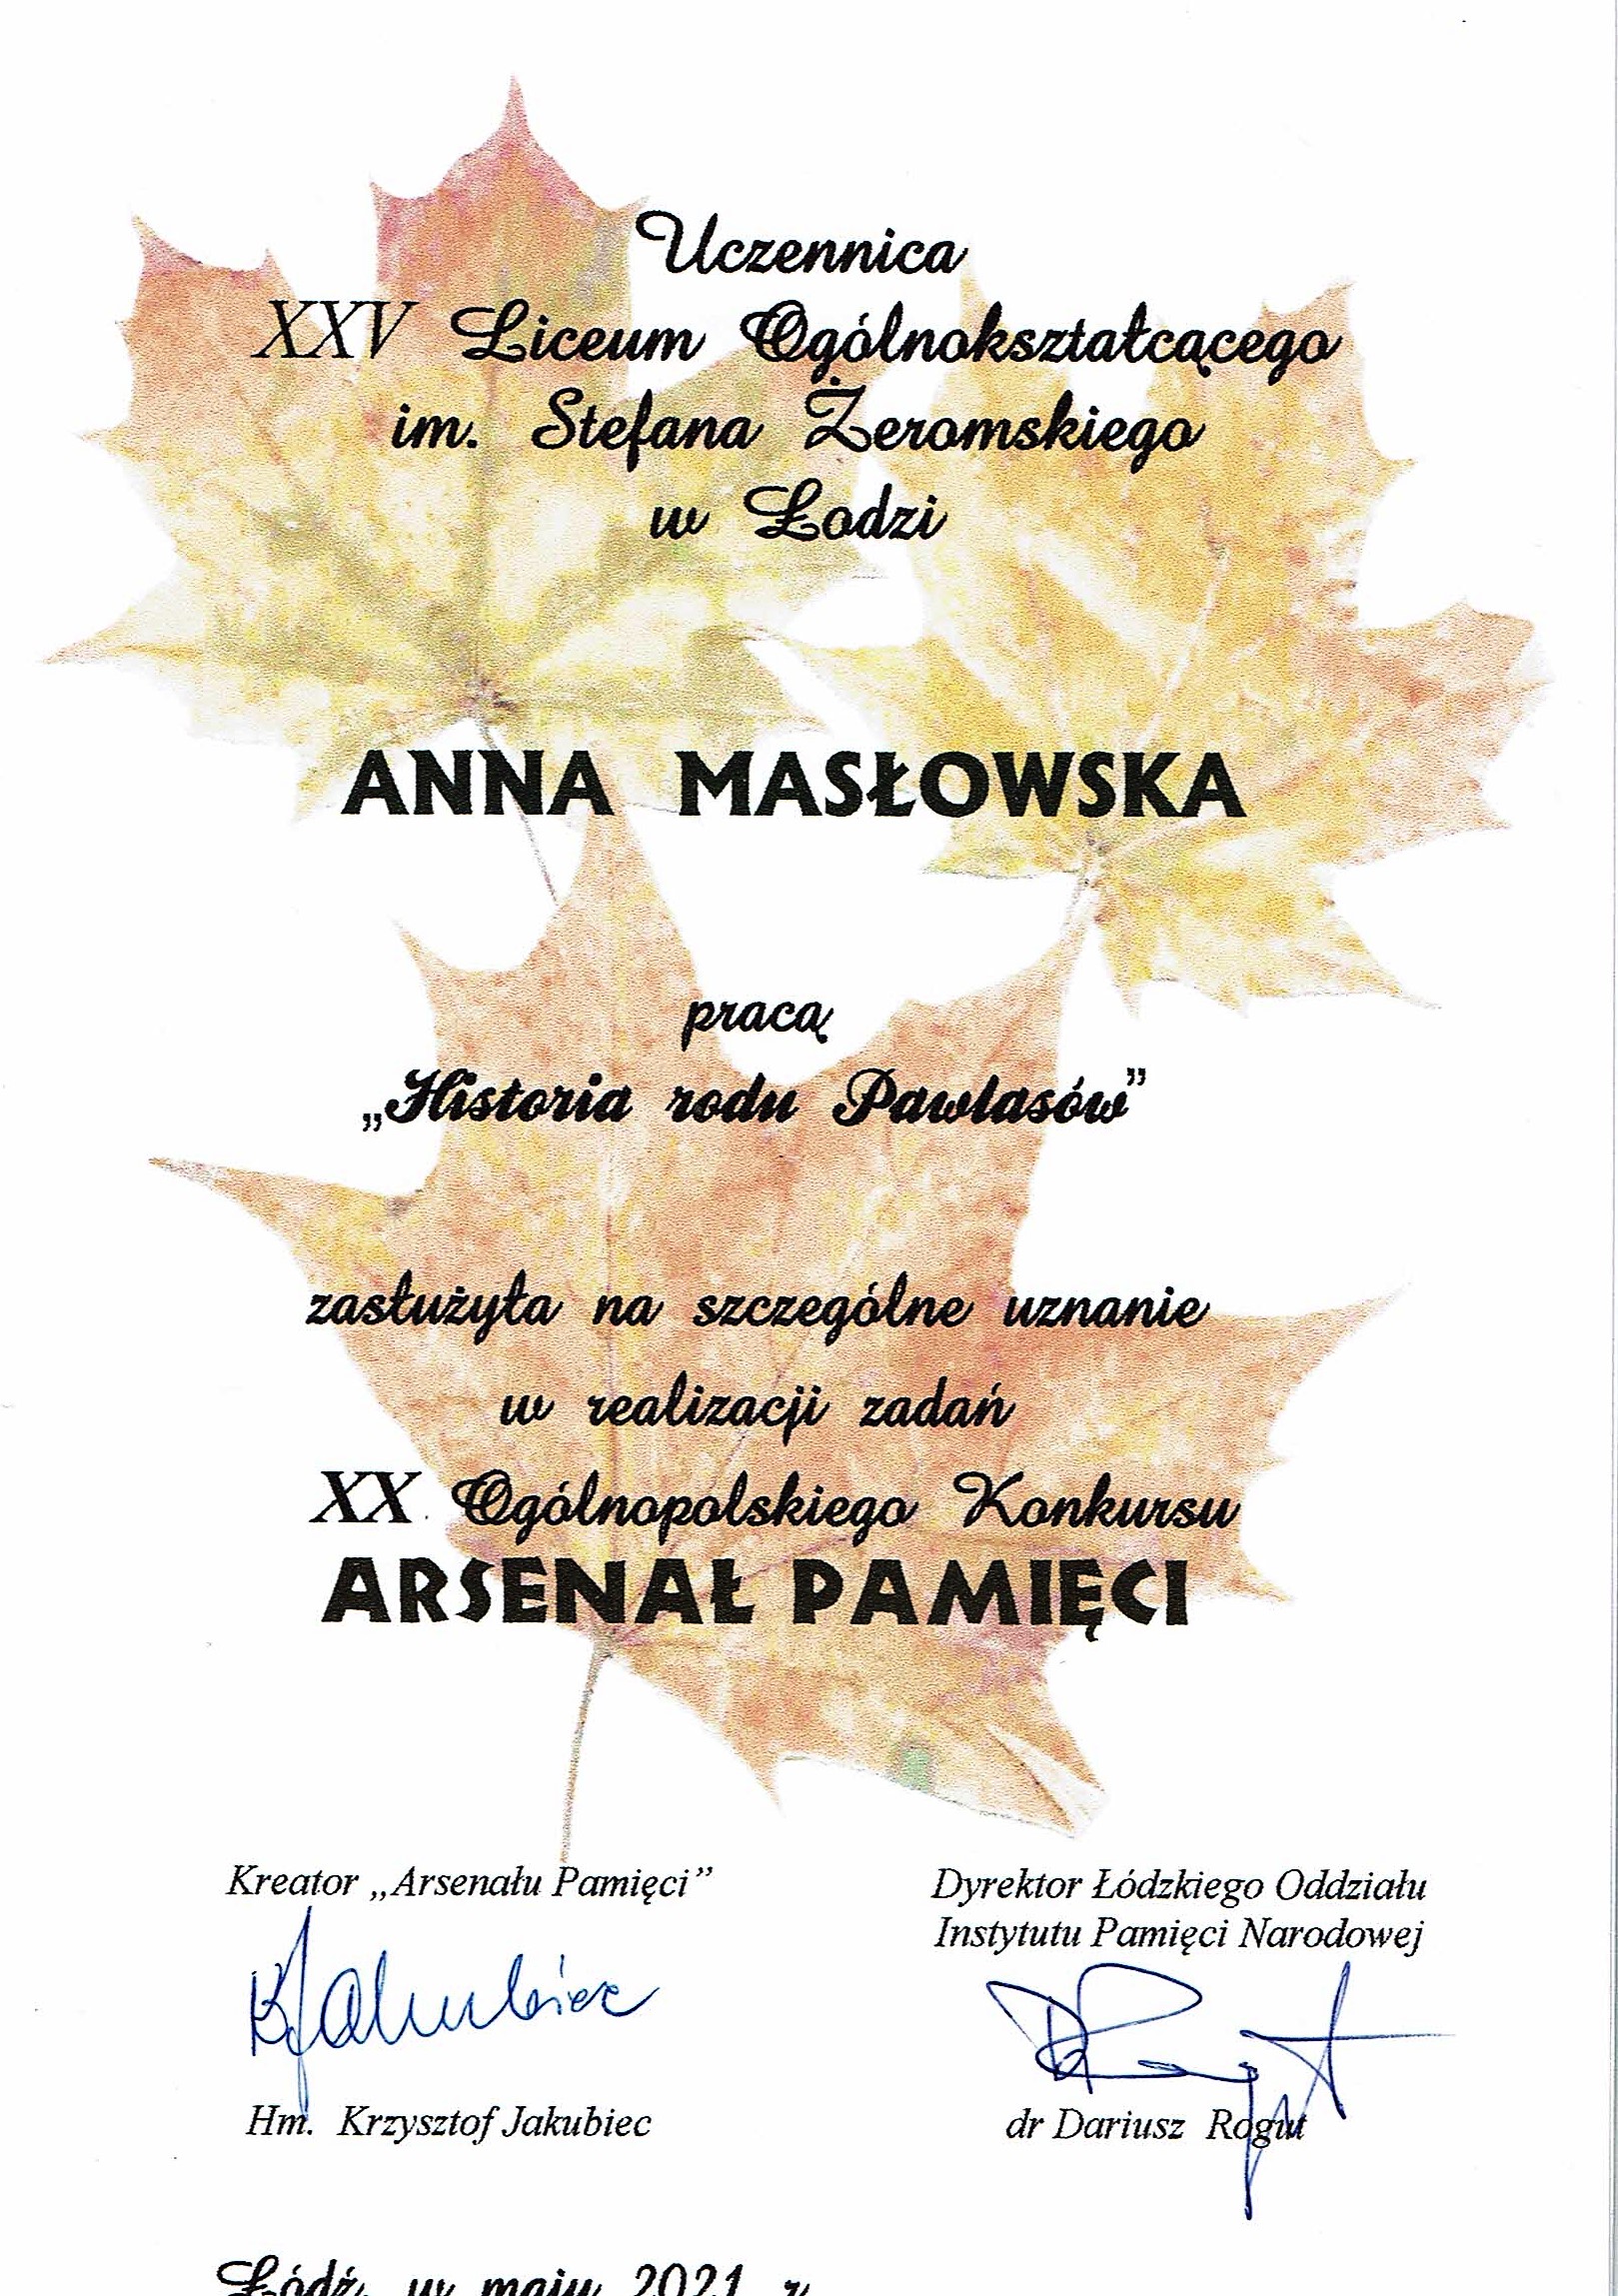 Wyróżnienie Primus Inter Pares XX Ogólnopolskiego konkursu Arsenał Pamięci dla Anny Masłowskiej